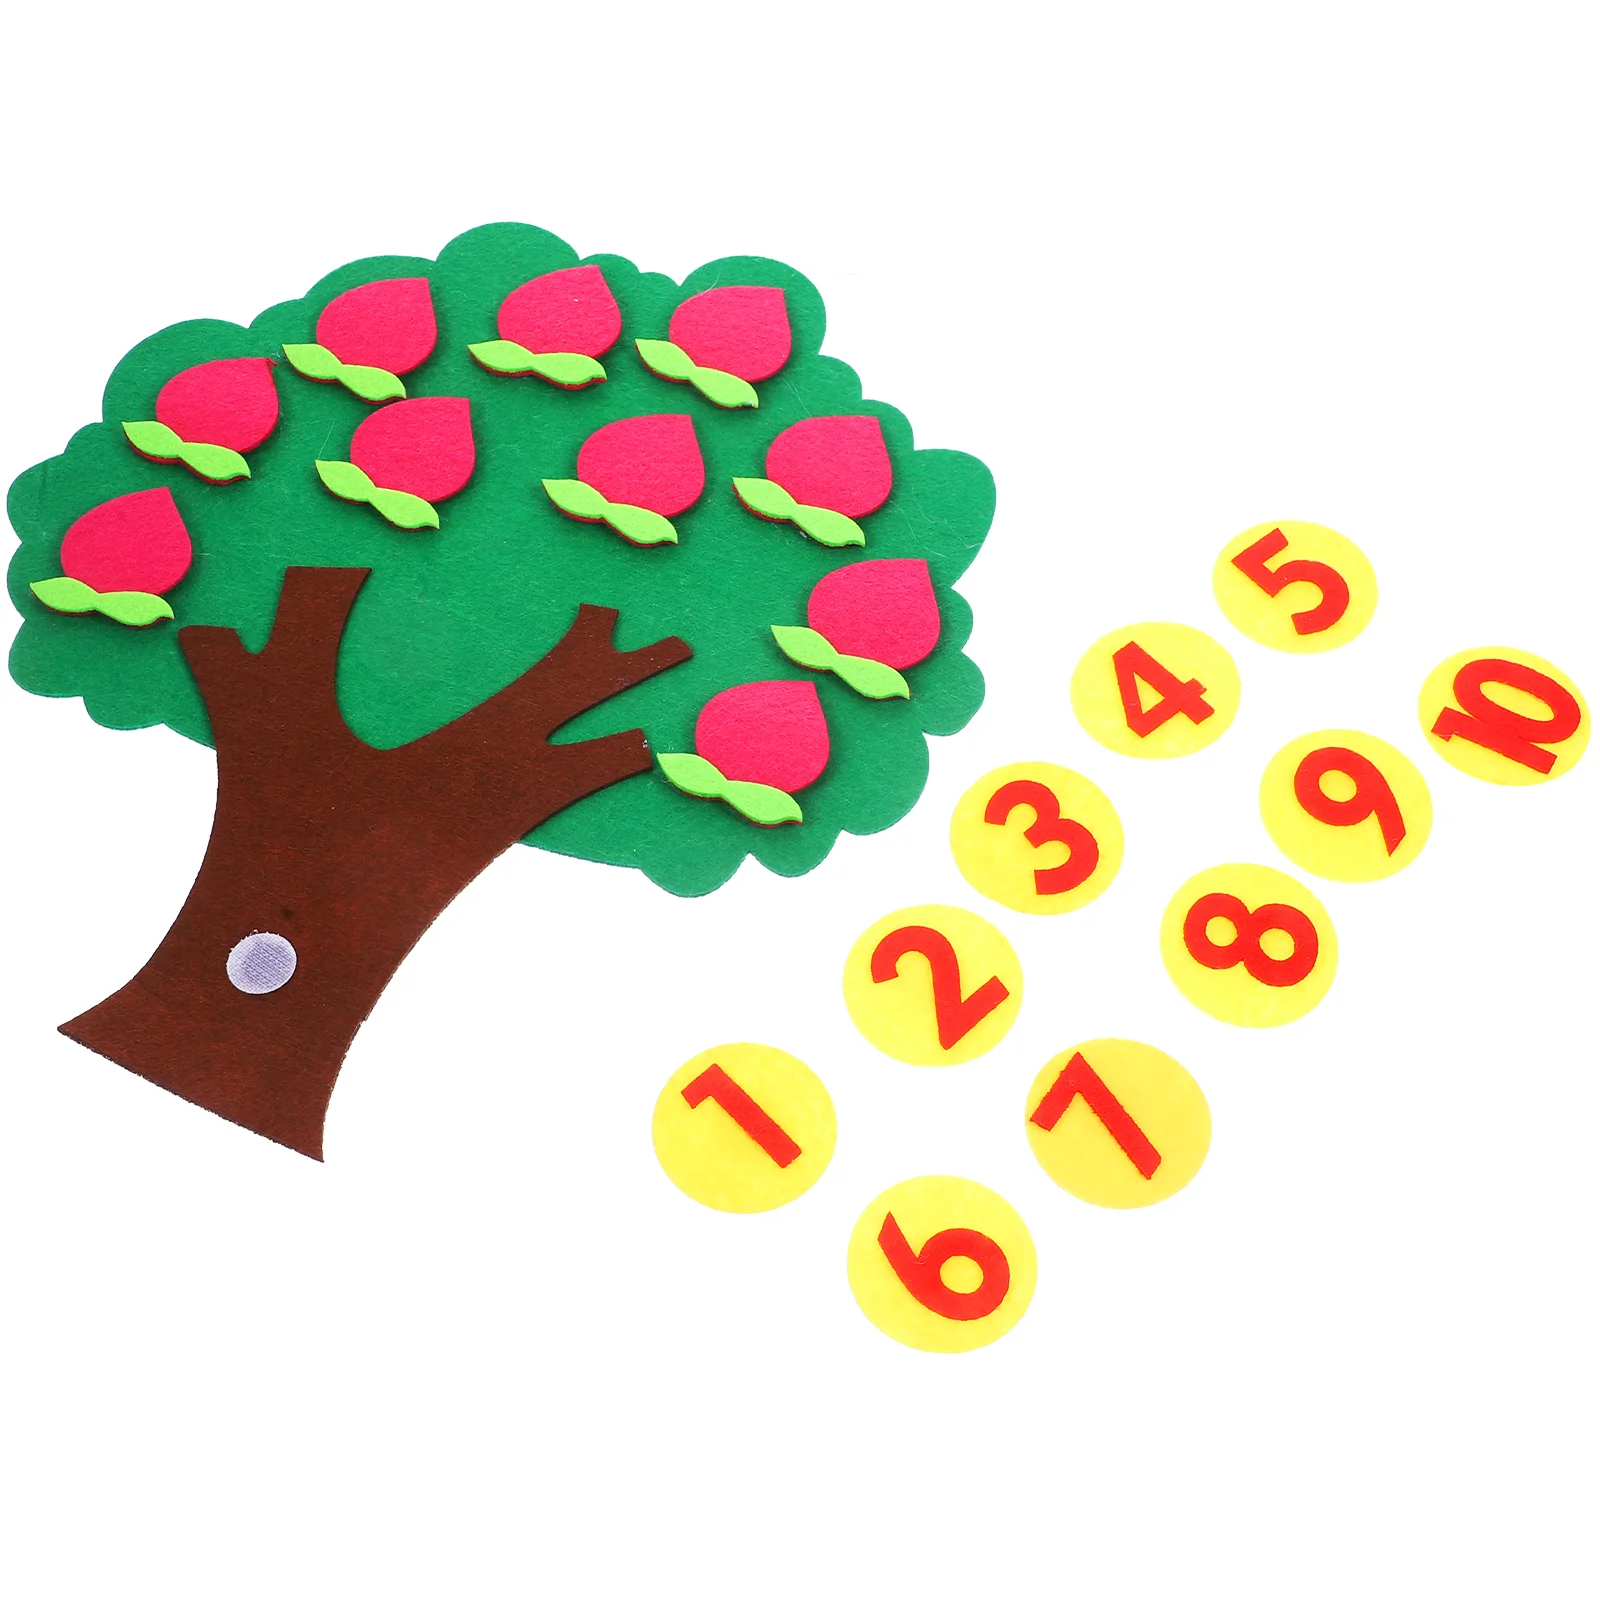 

Цифровые когнитивные игрушки фруктовое дерево дошкольные поставки сопряжение нетканые Образовательные Дети подсчет игра для детского сада